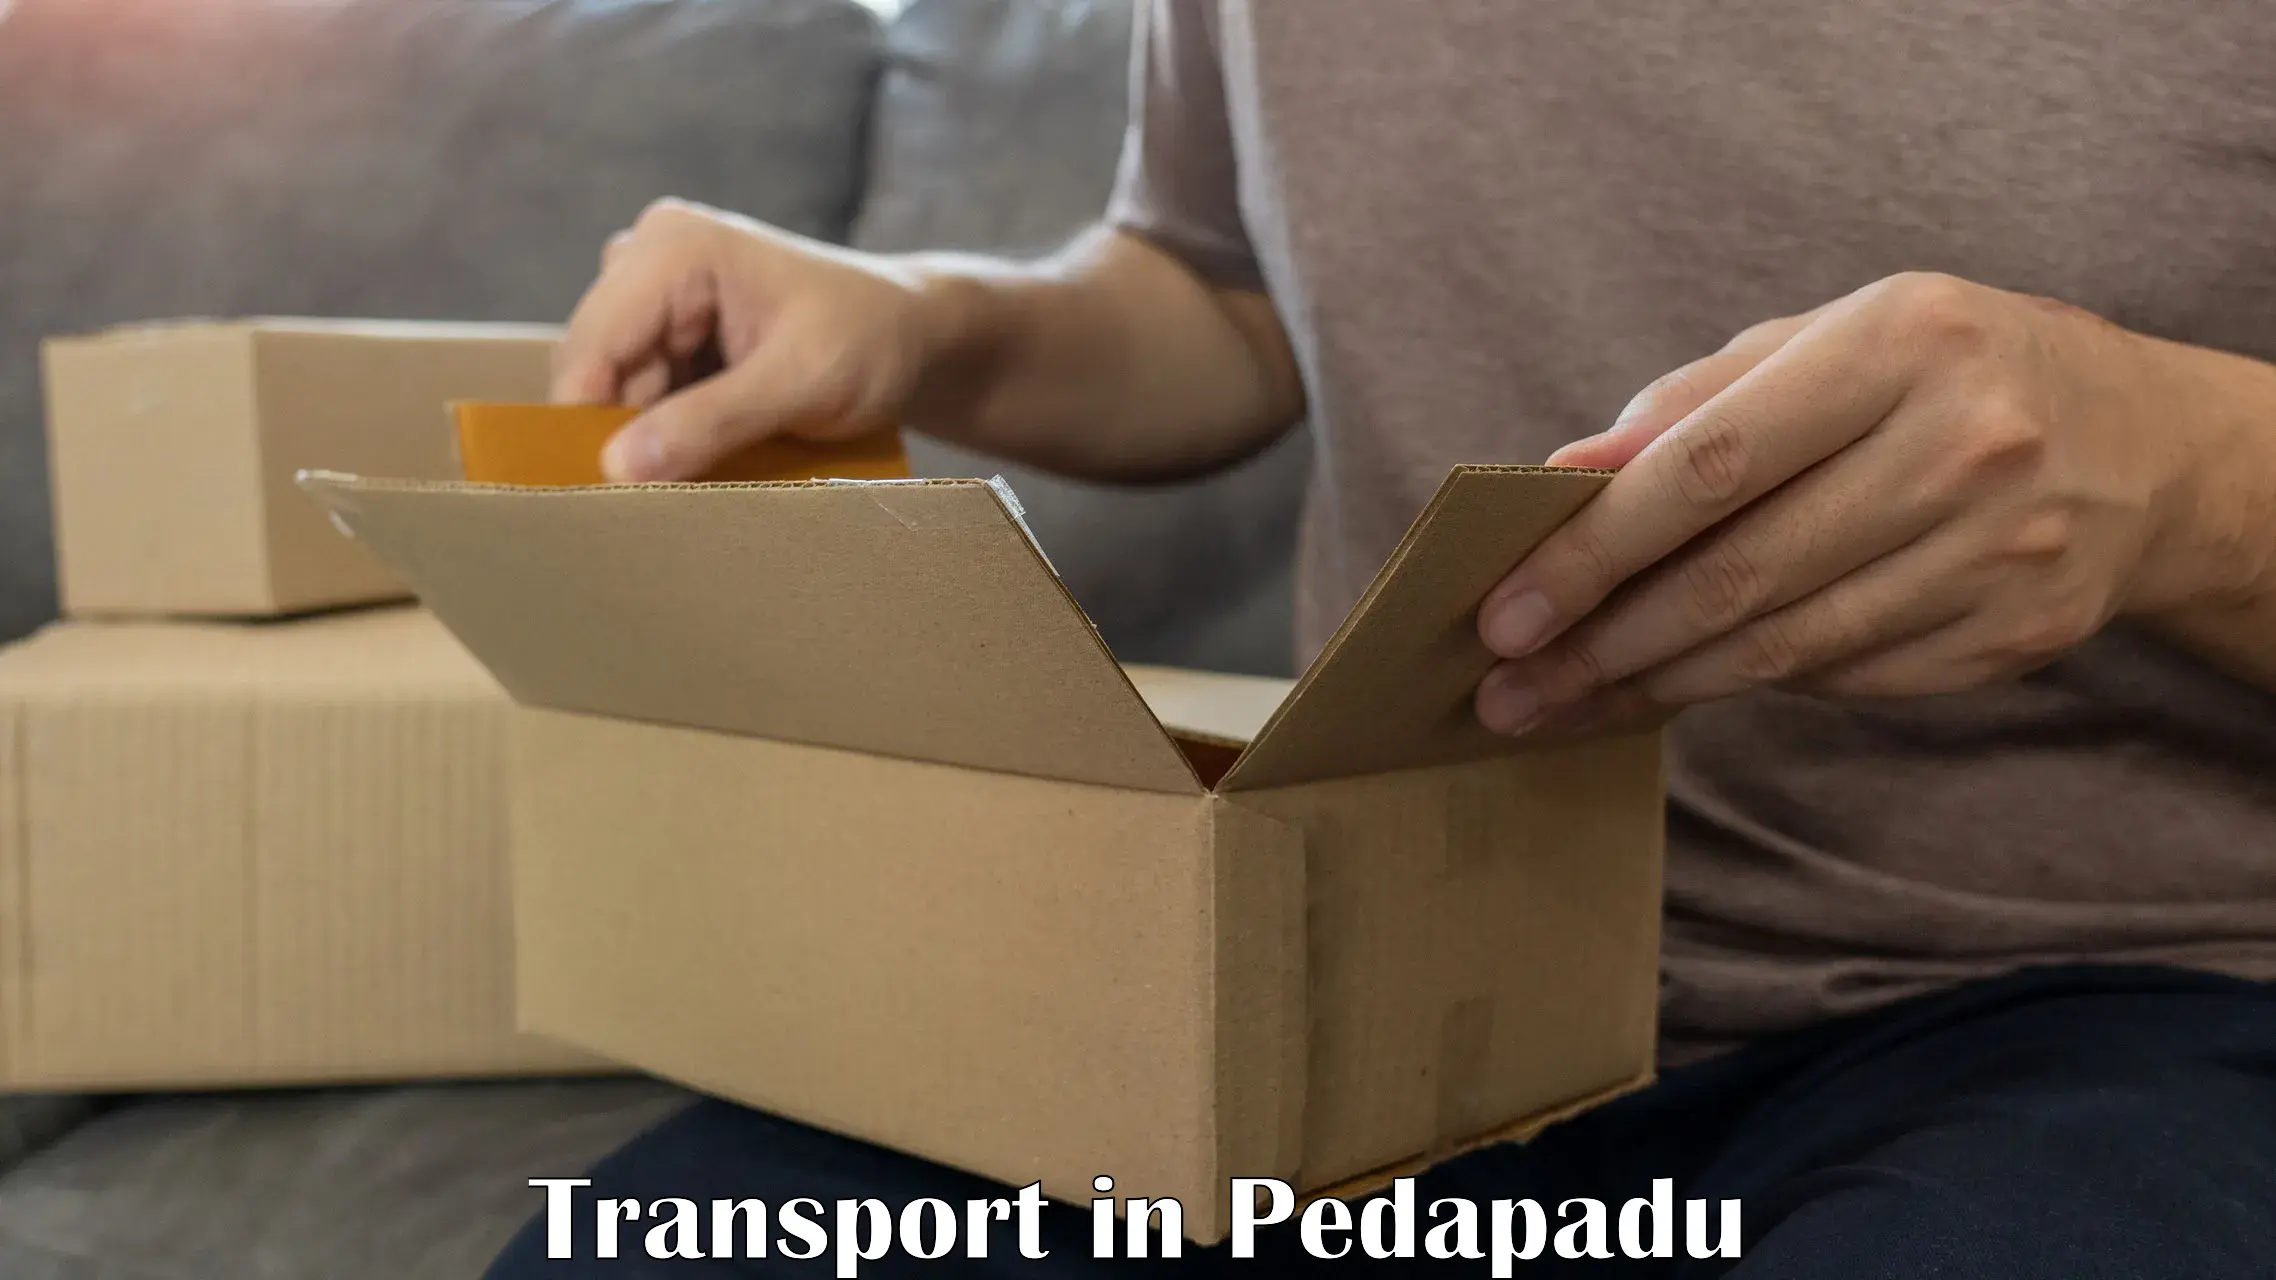 Delivery service in Pedapadu